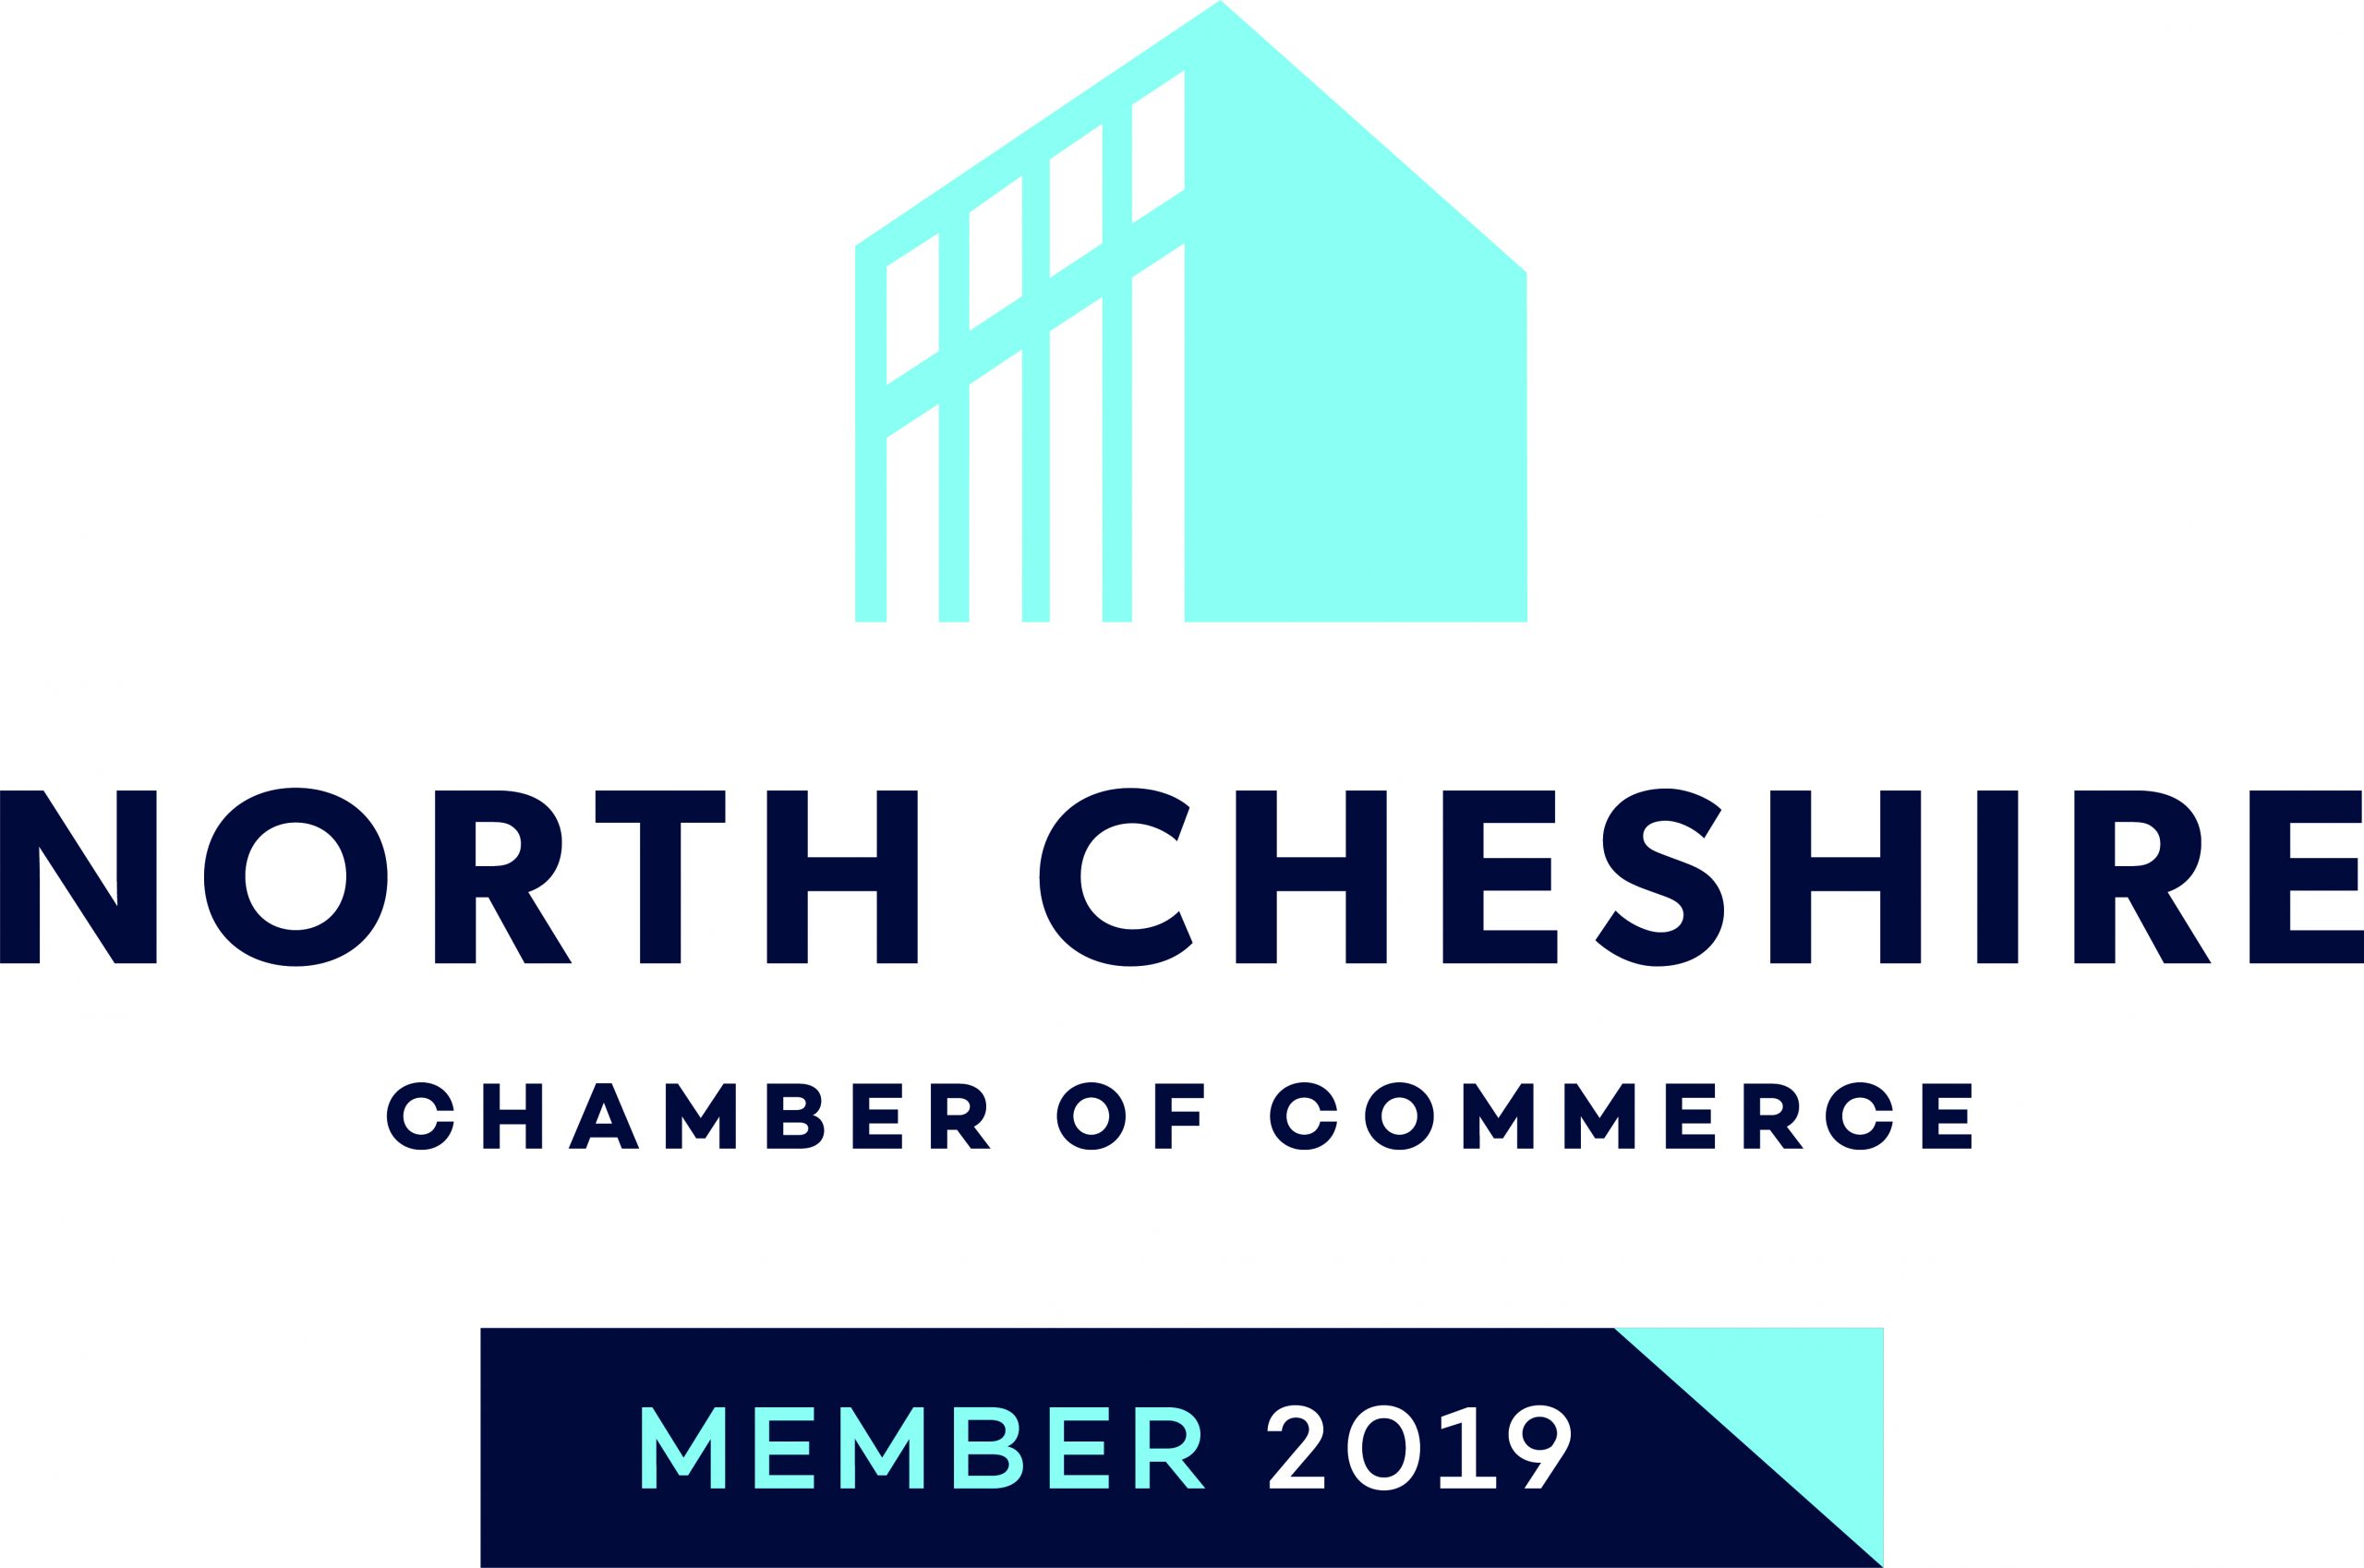 North Cheshire Chamber of Commerce